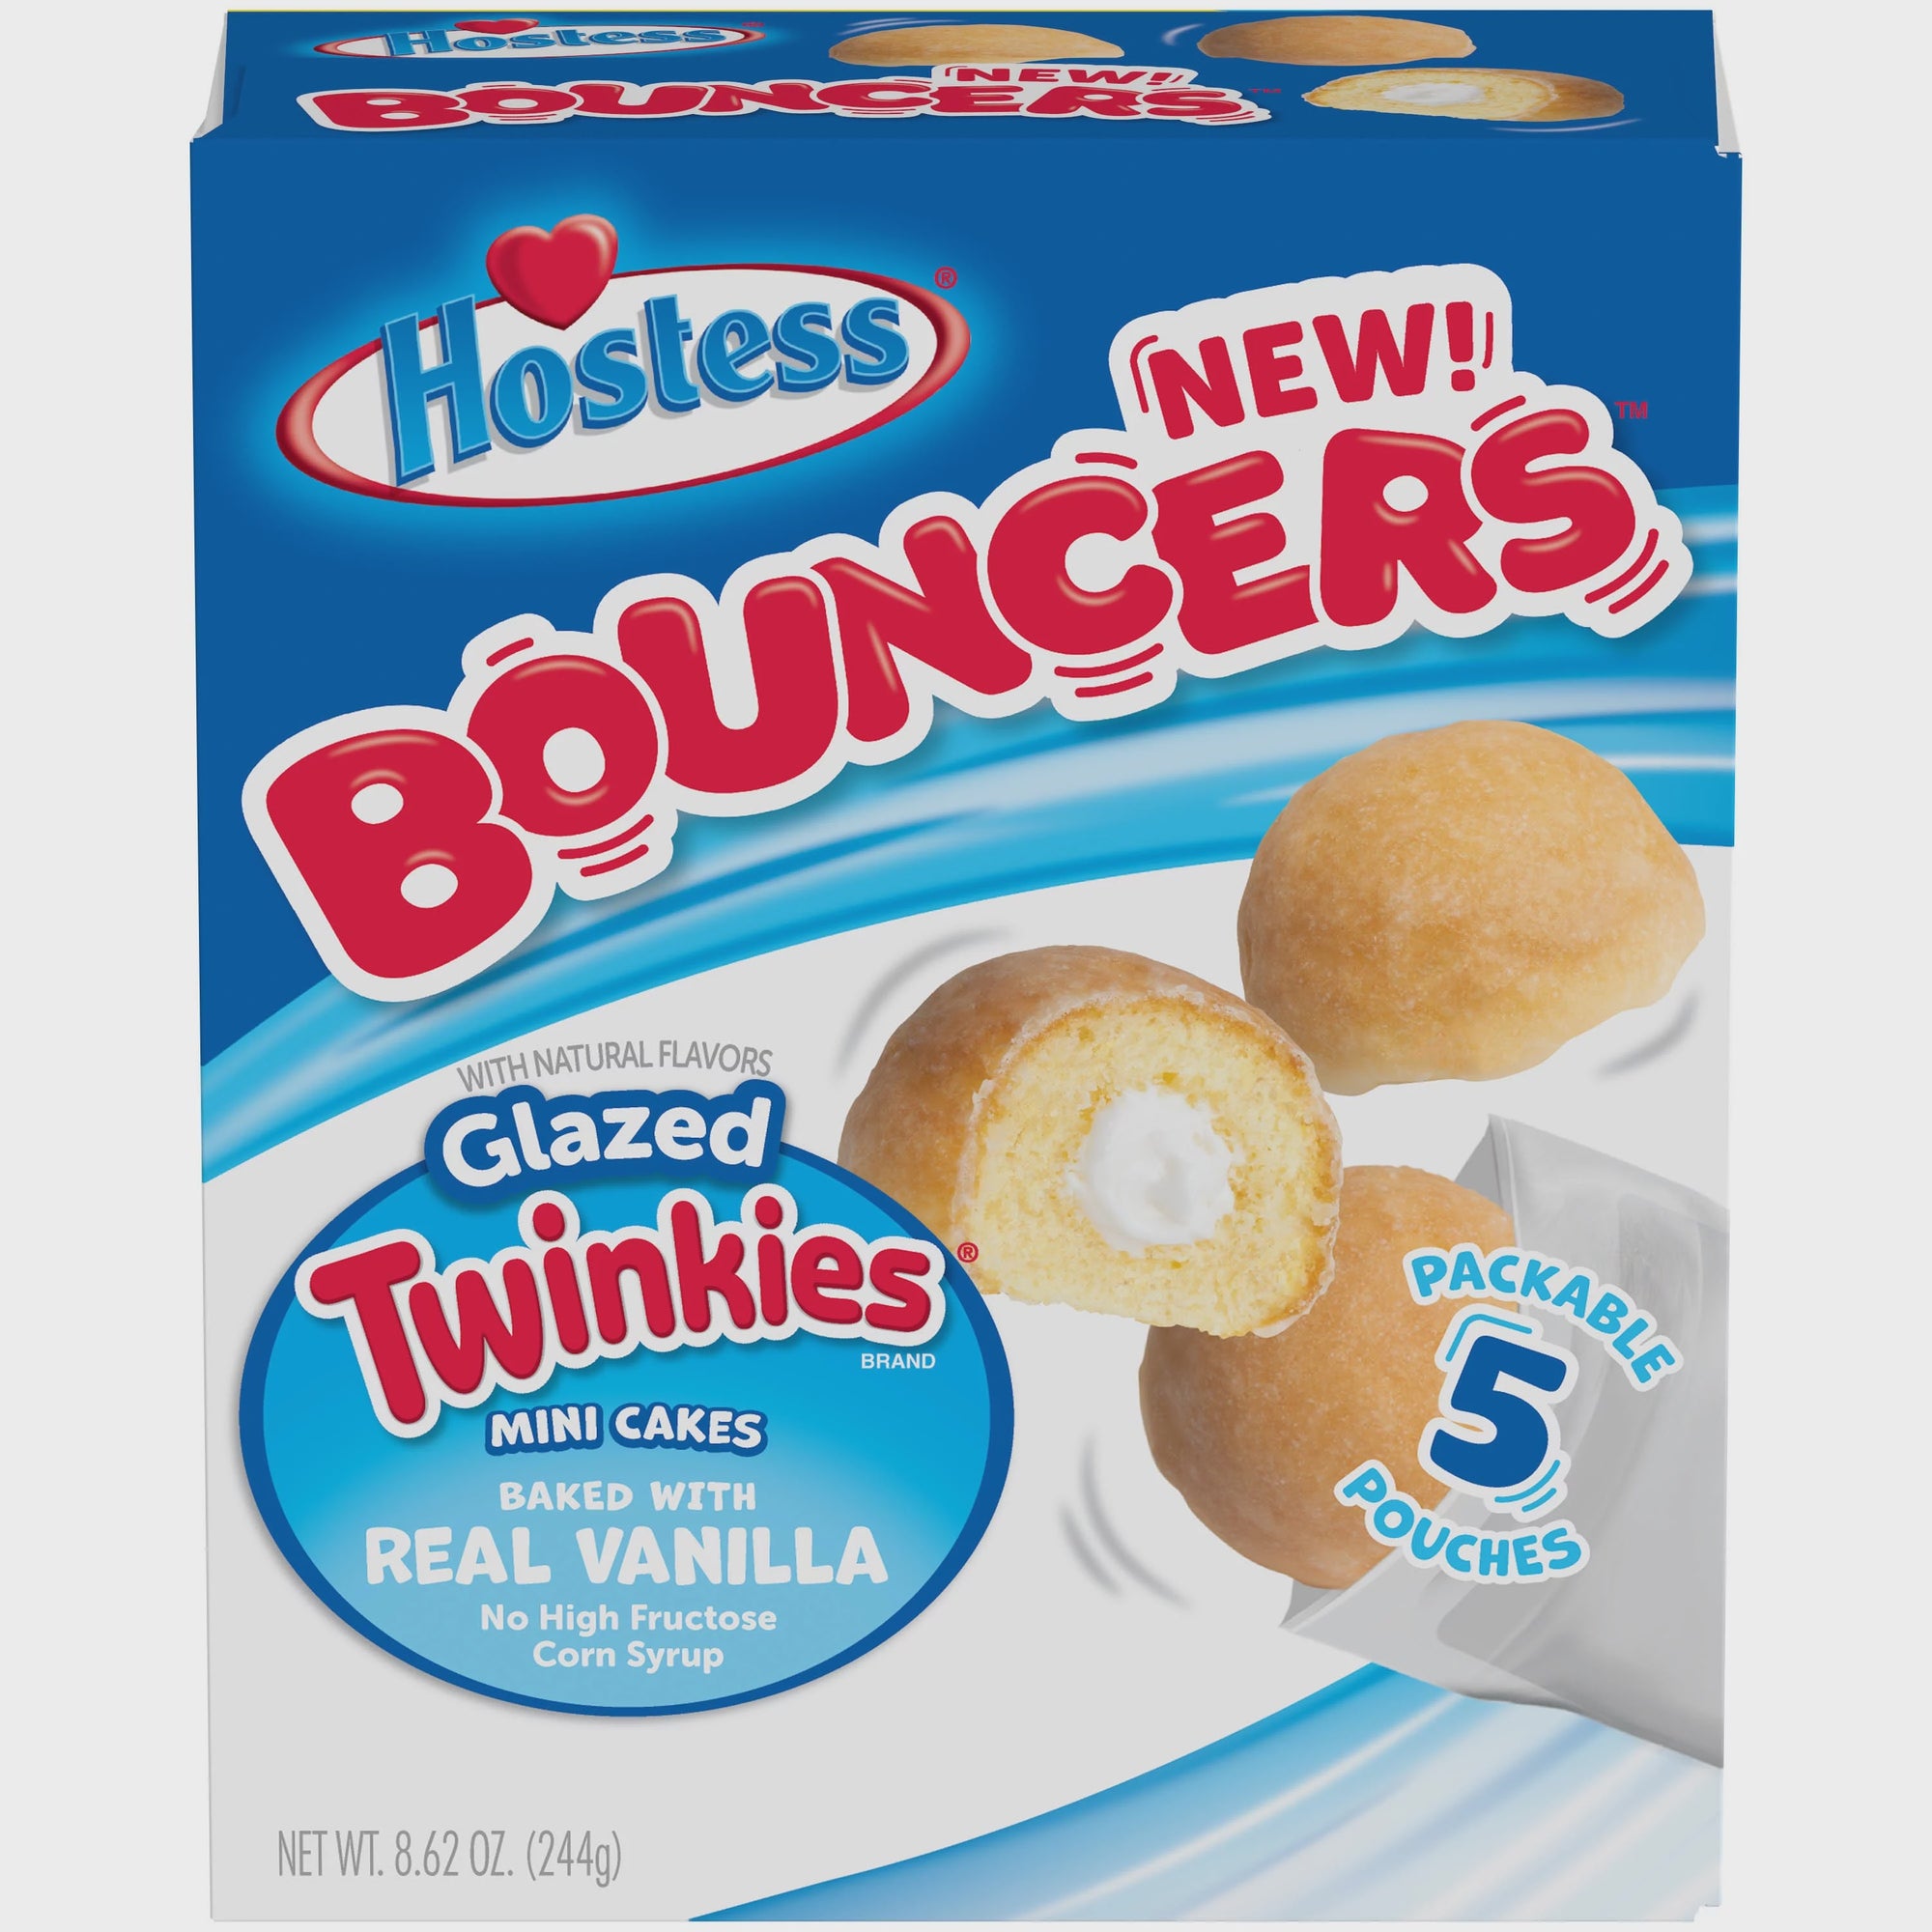 Hostess Bouncers Glazed Twinkies 5pk